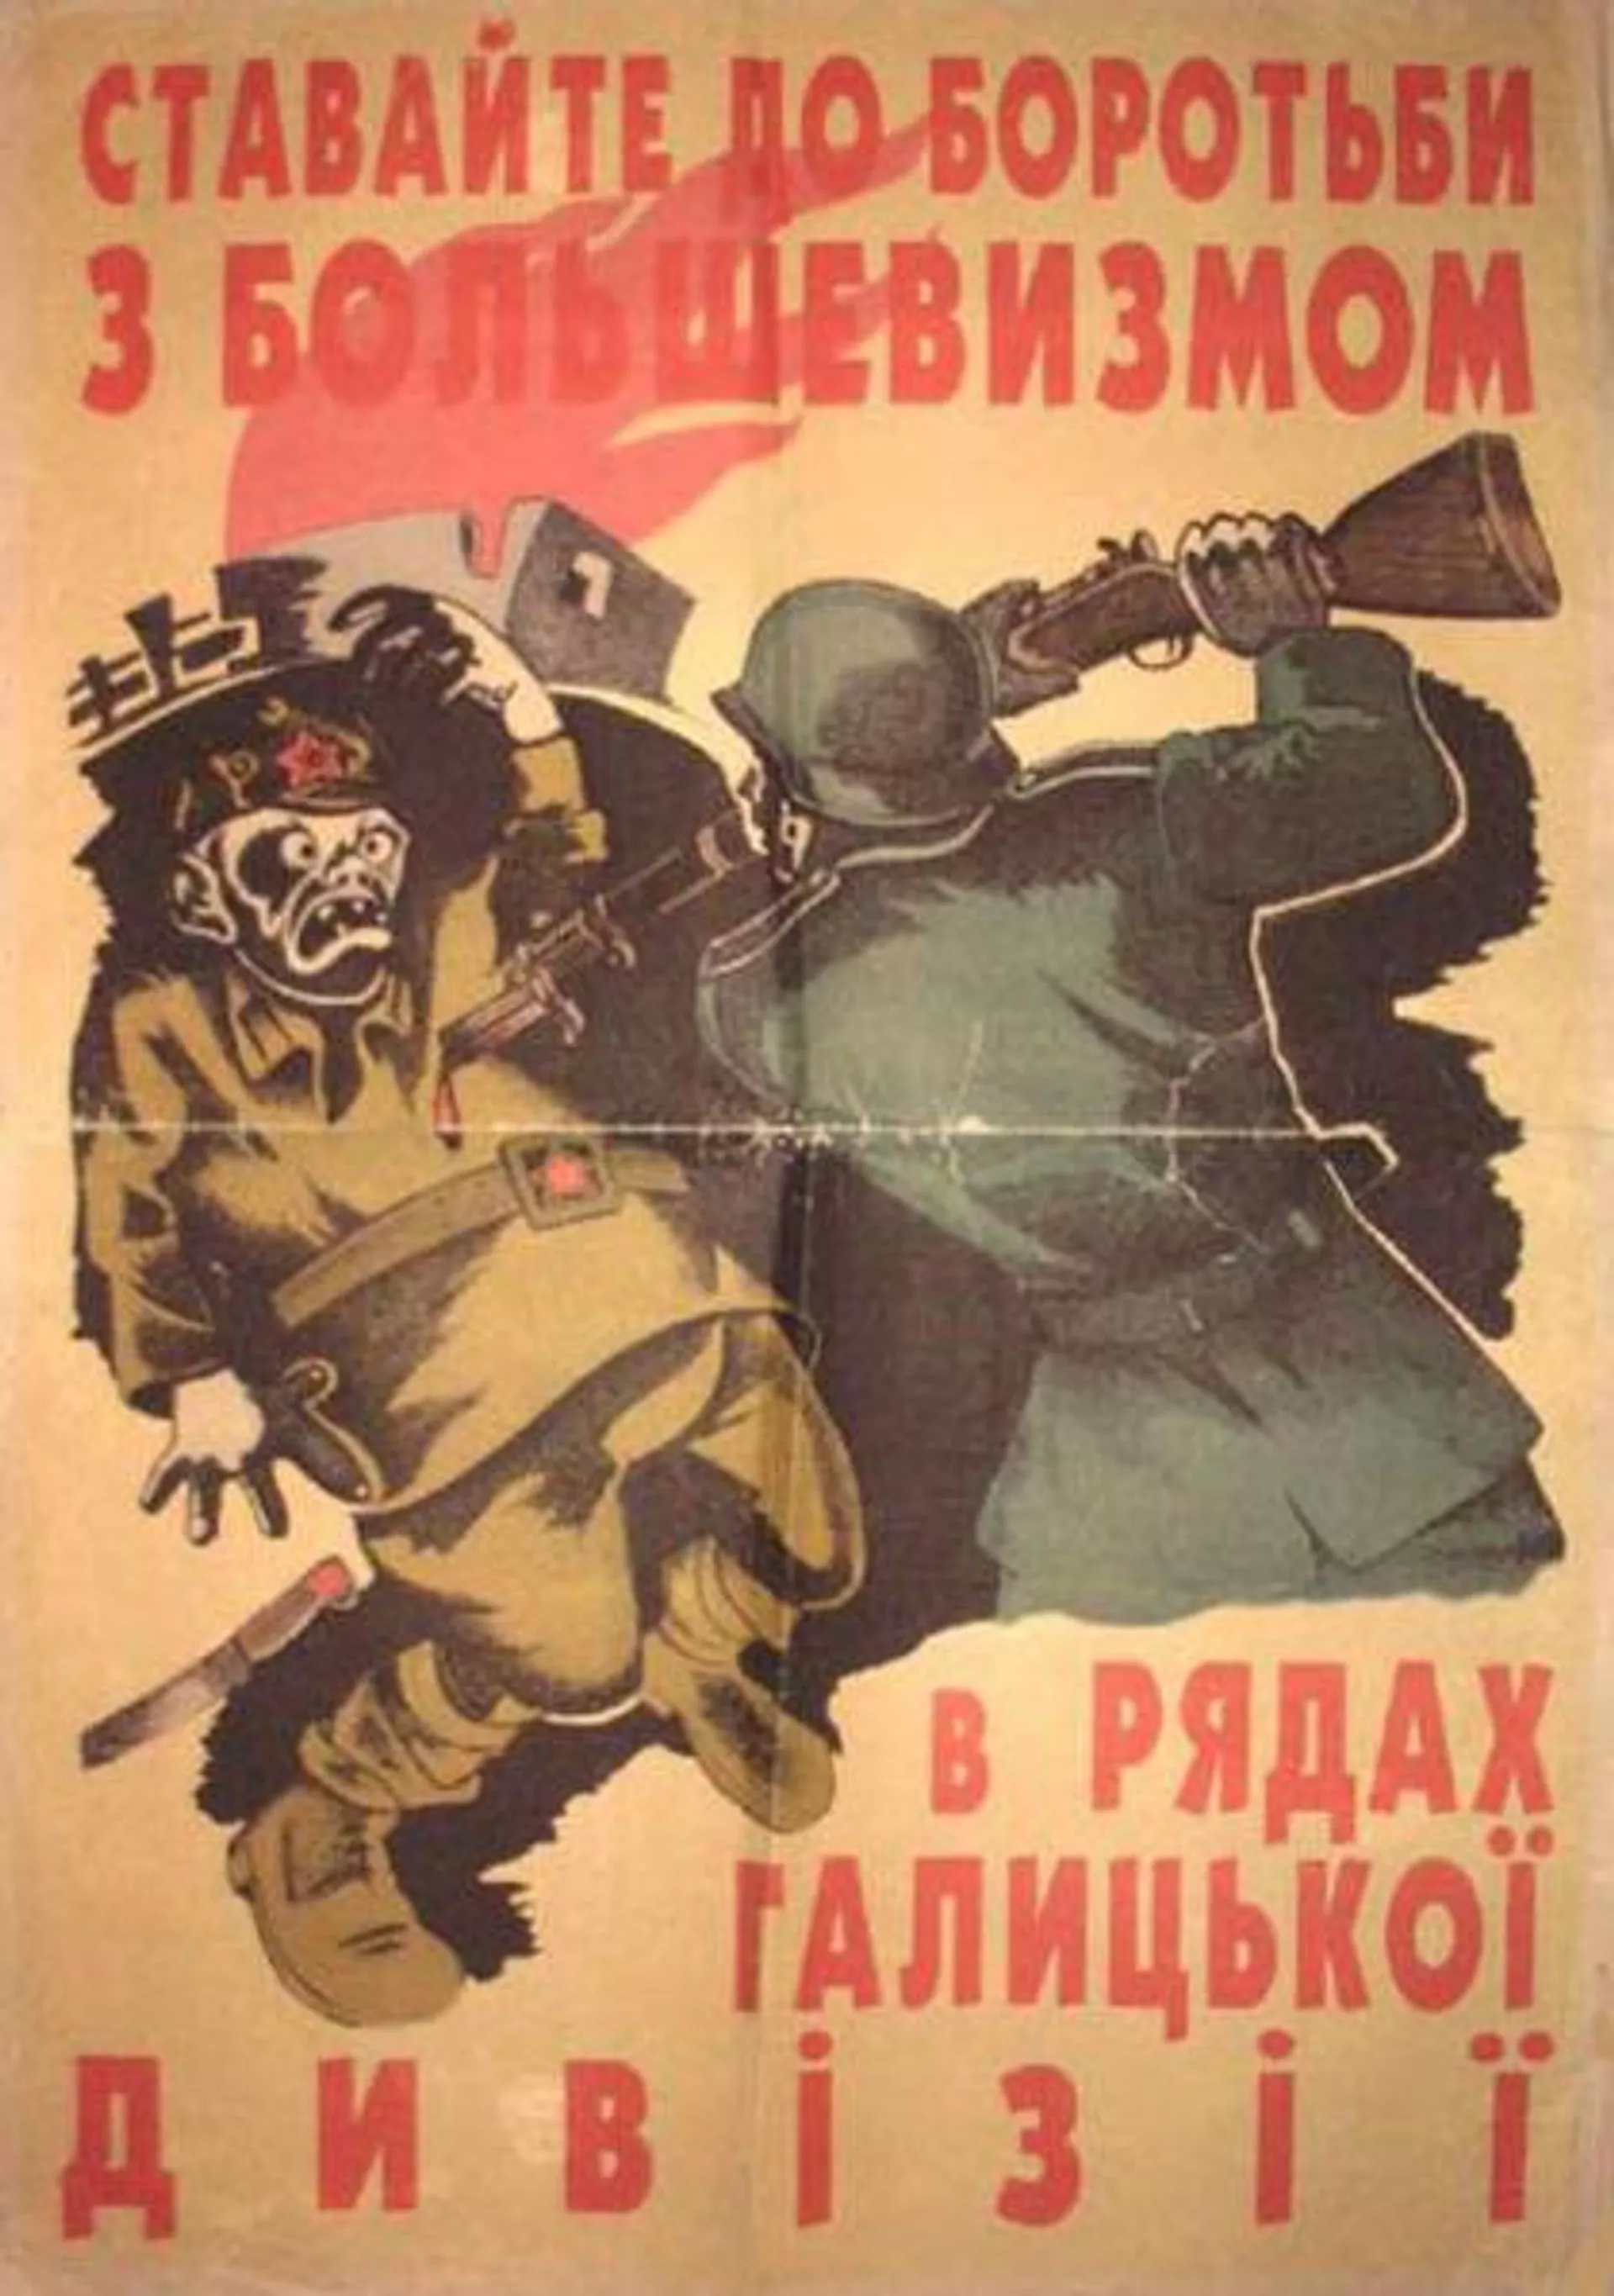 Cartel propagandístico de 1943 que animaba a los ucranianos a unirse a la batalla contra el bolchevismo en las filas de la División Galicia.  - Sputnik Internacional, 1920, 25.09.2023